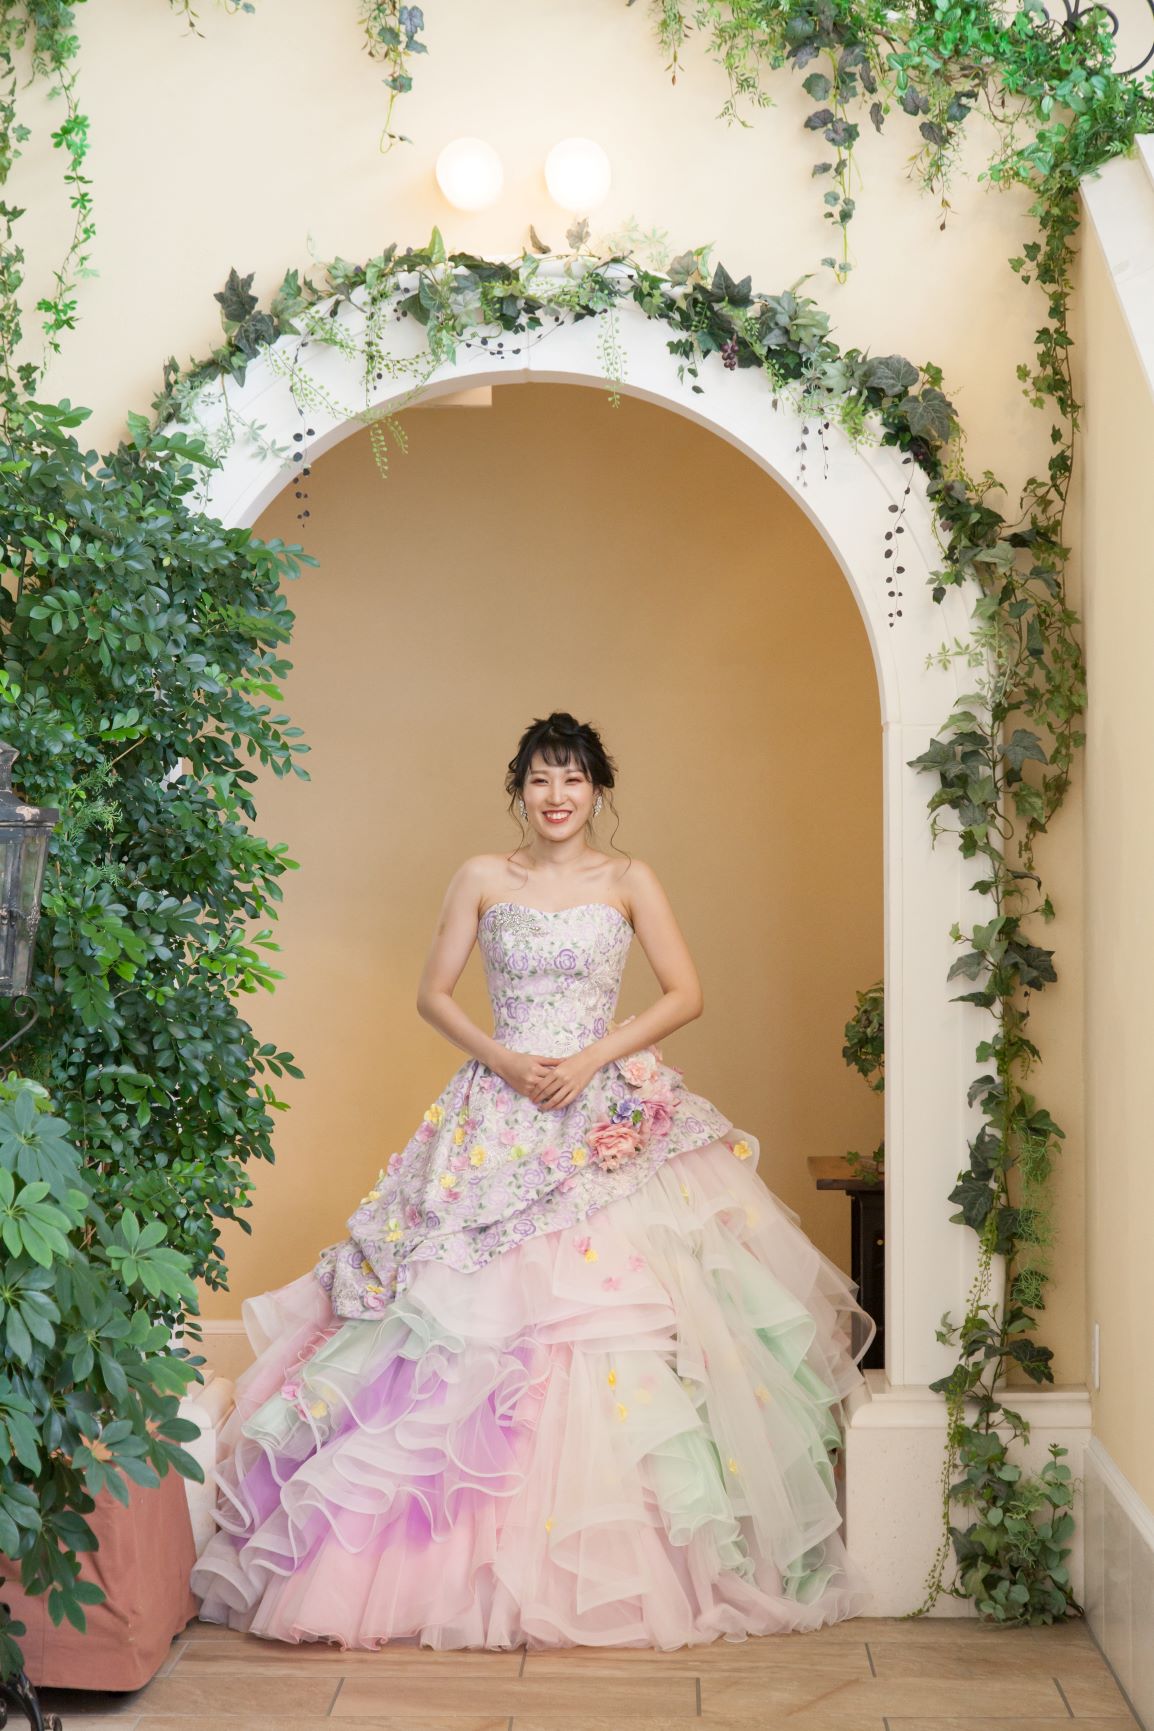 【公式】横浜の結婚式場「モンテファーレ」 『成人式ドレス前撮りプラン』が登場‼